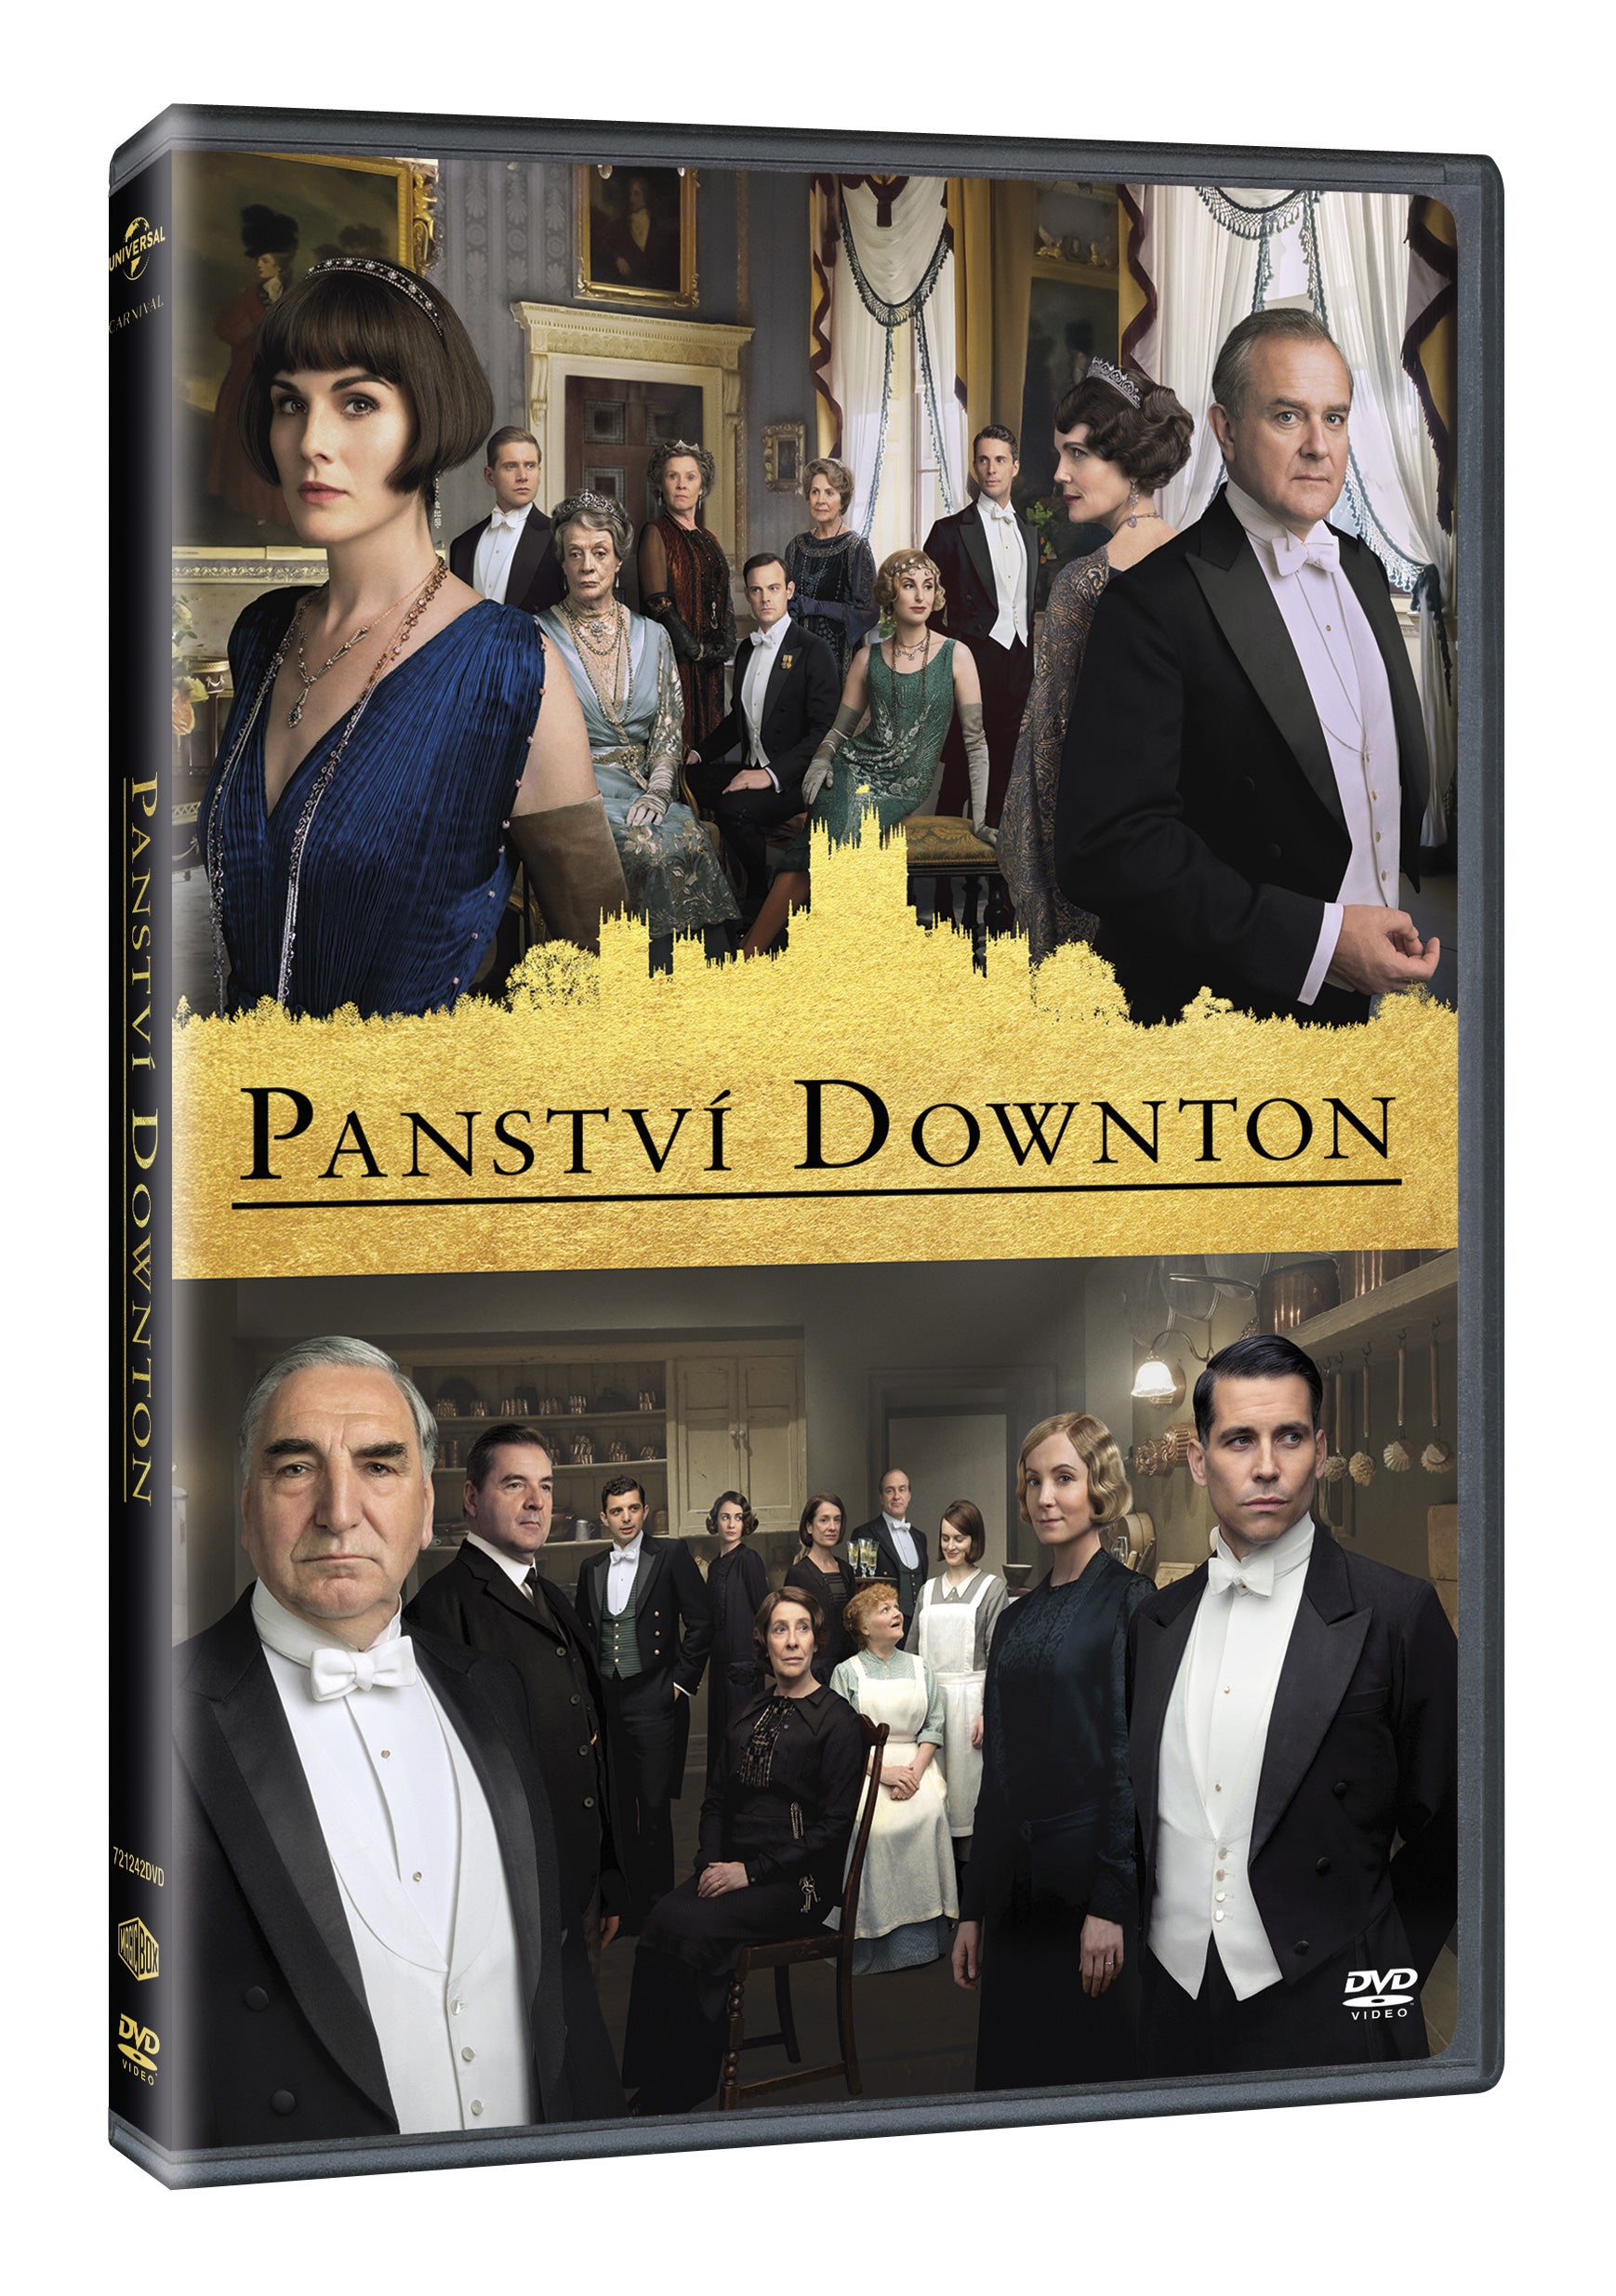 Panstvi Downton DVD / Downton Abbey